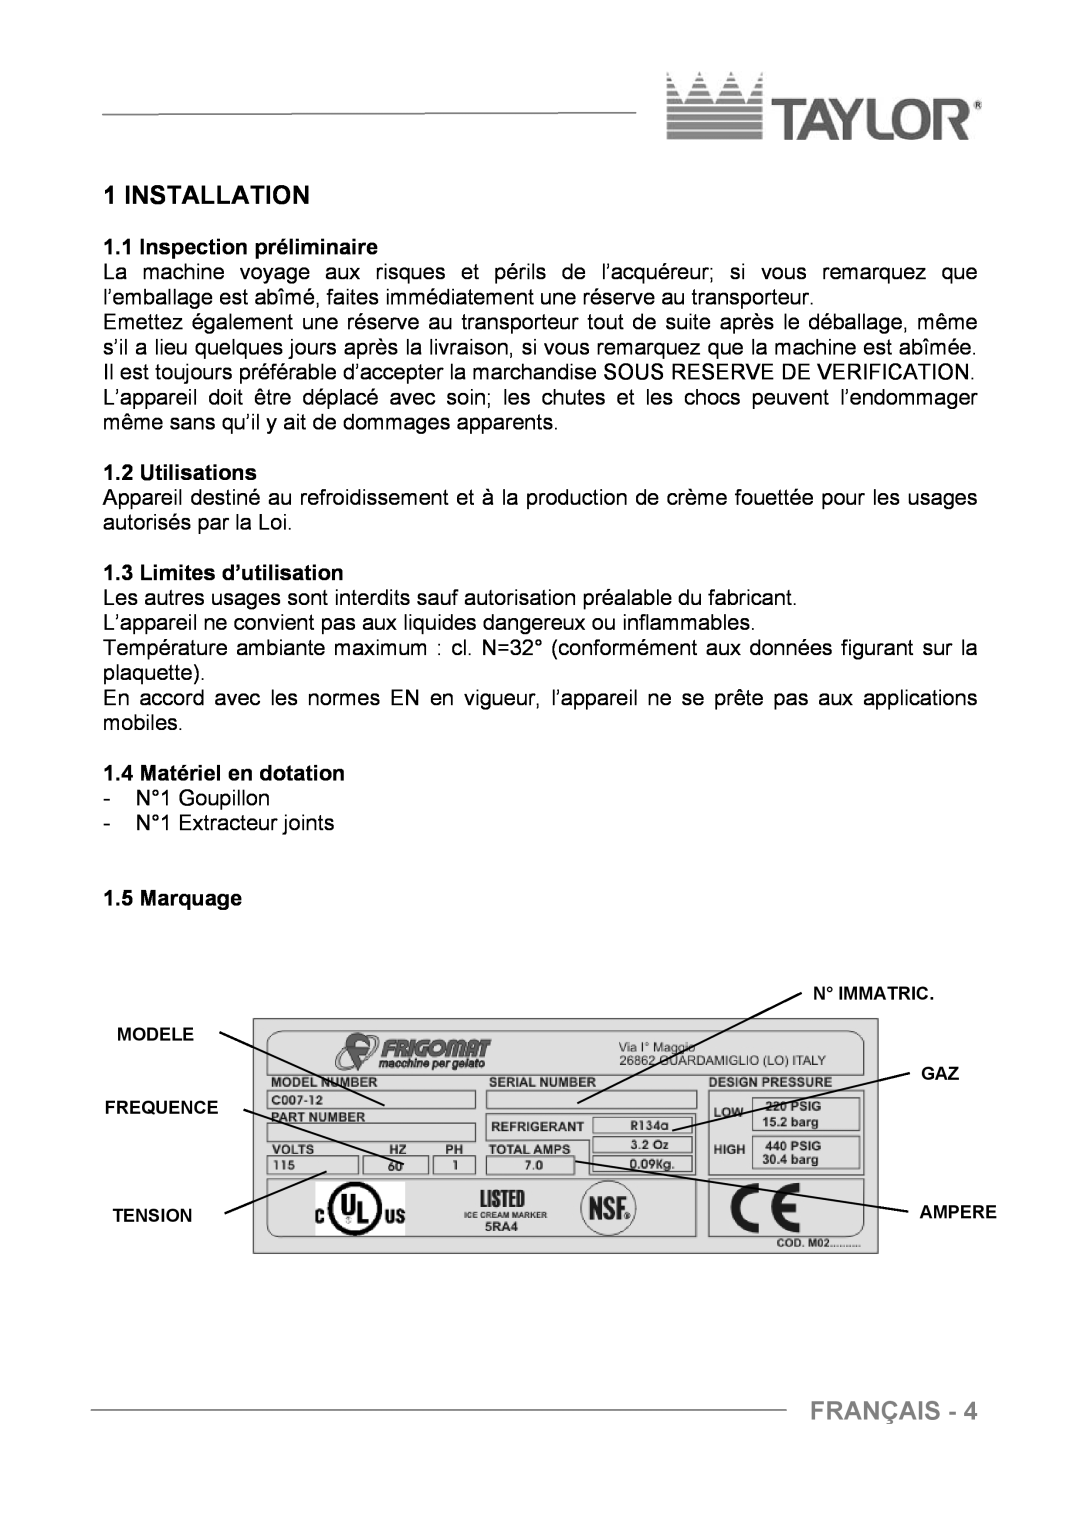 Taylor C004 - C007 Installation, Français, Inspection préliminaire, Utilisations, Limites d’utilisation, Marquage 